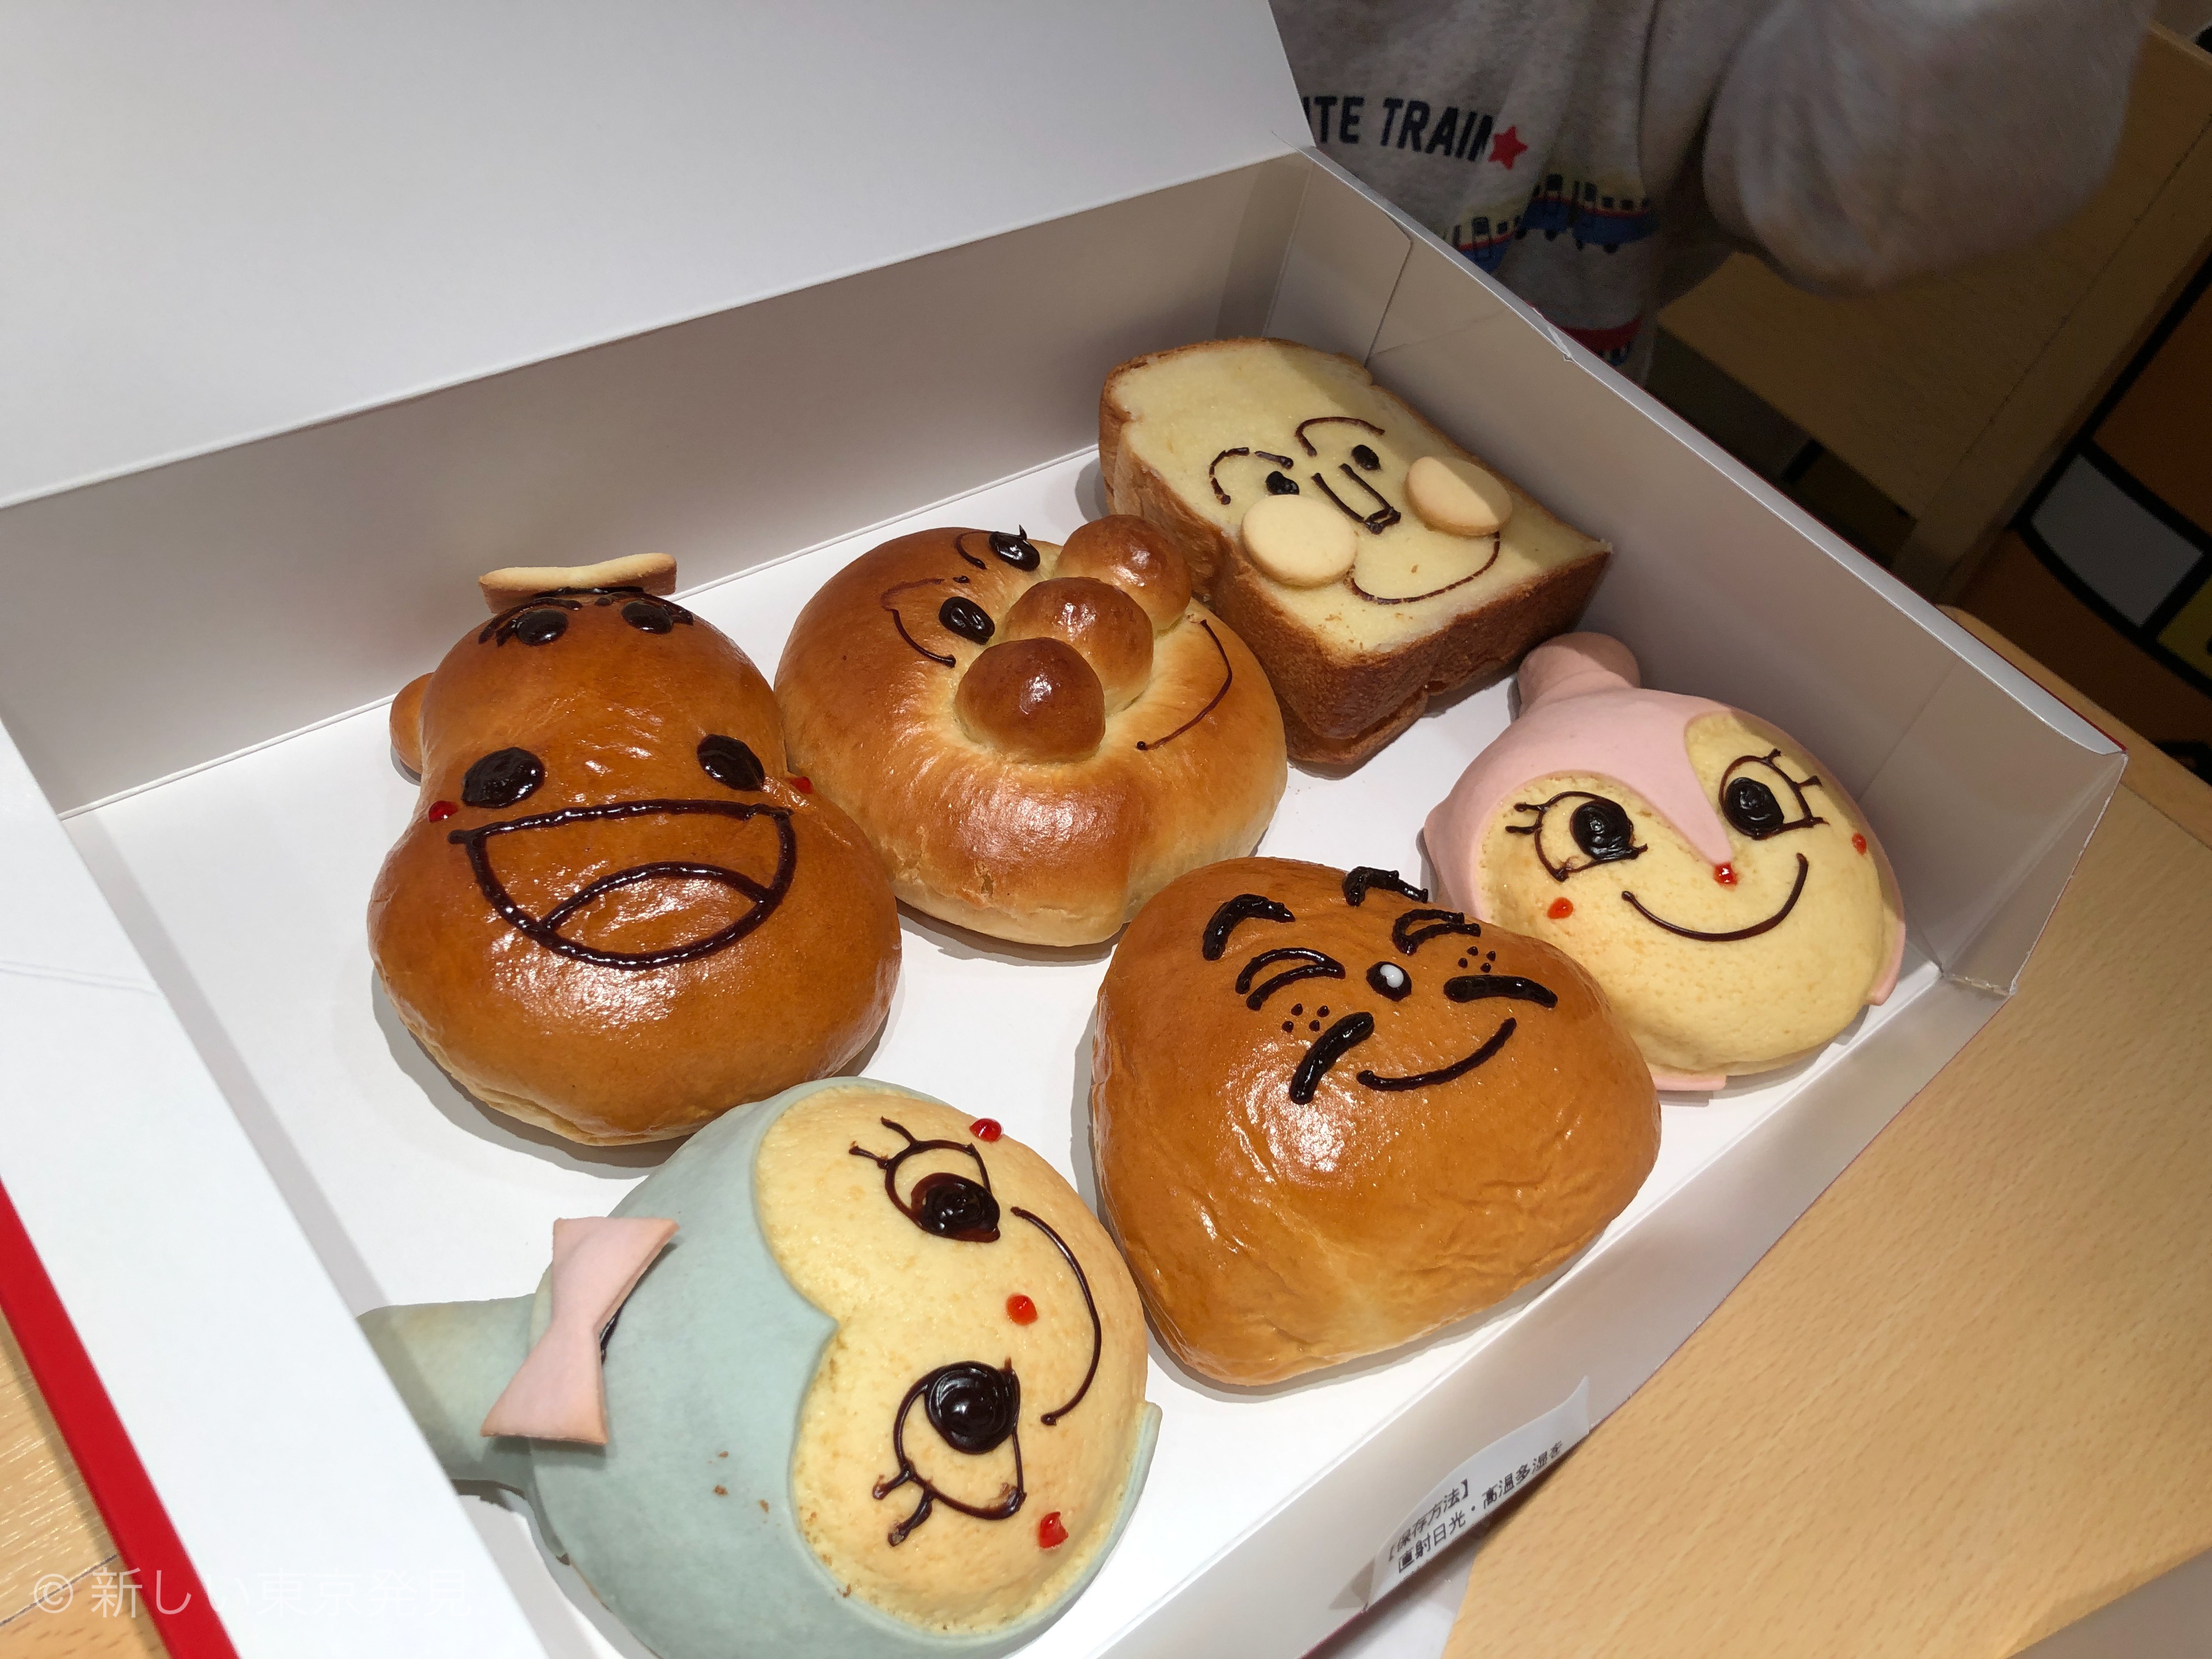 横浜アンパンマンこどもミュージアムの ジャムおじさんのパン工房 は 大人も美味しく3歳子供も喜ぶパンがたくさん 子連れパパママを応援する情報チャンネル 新しい東京発見